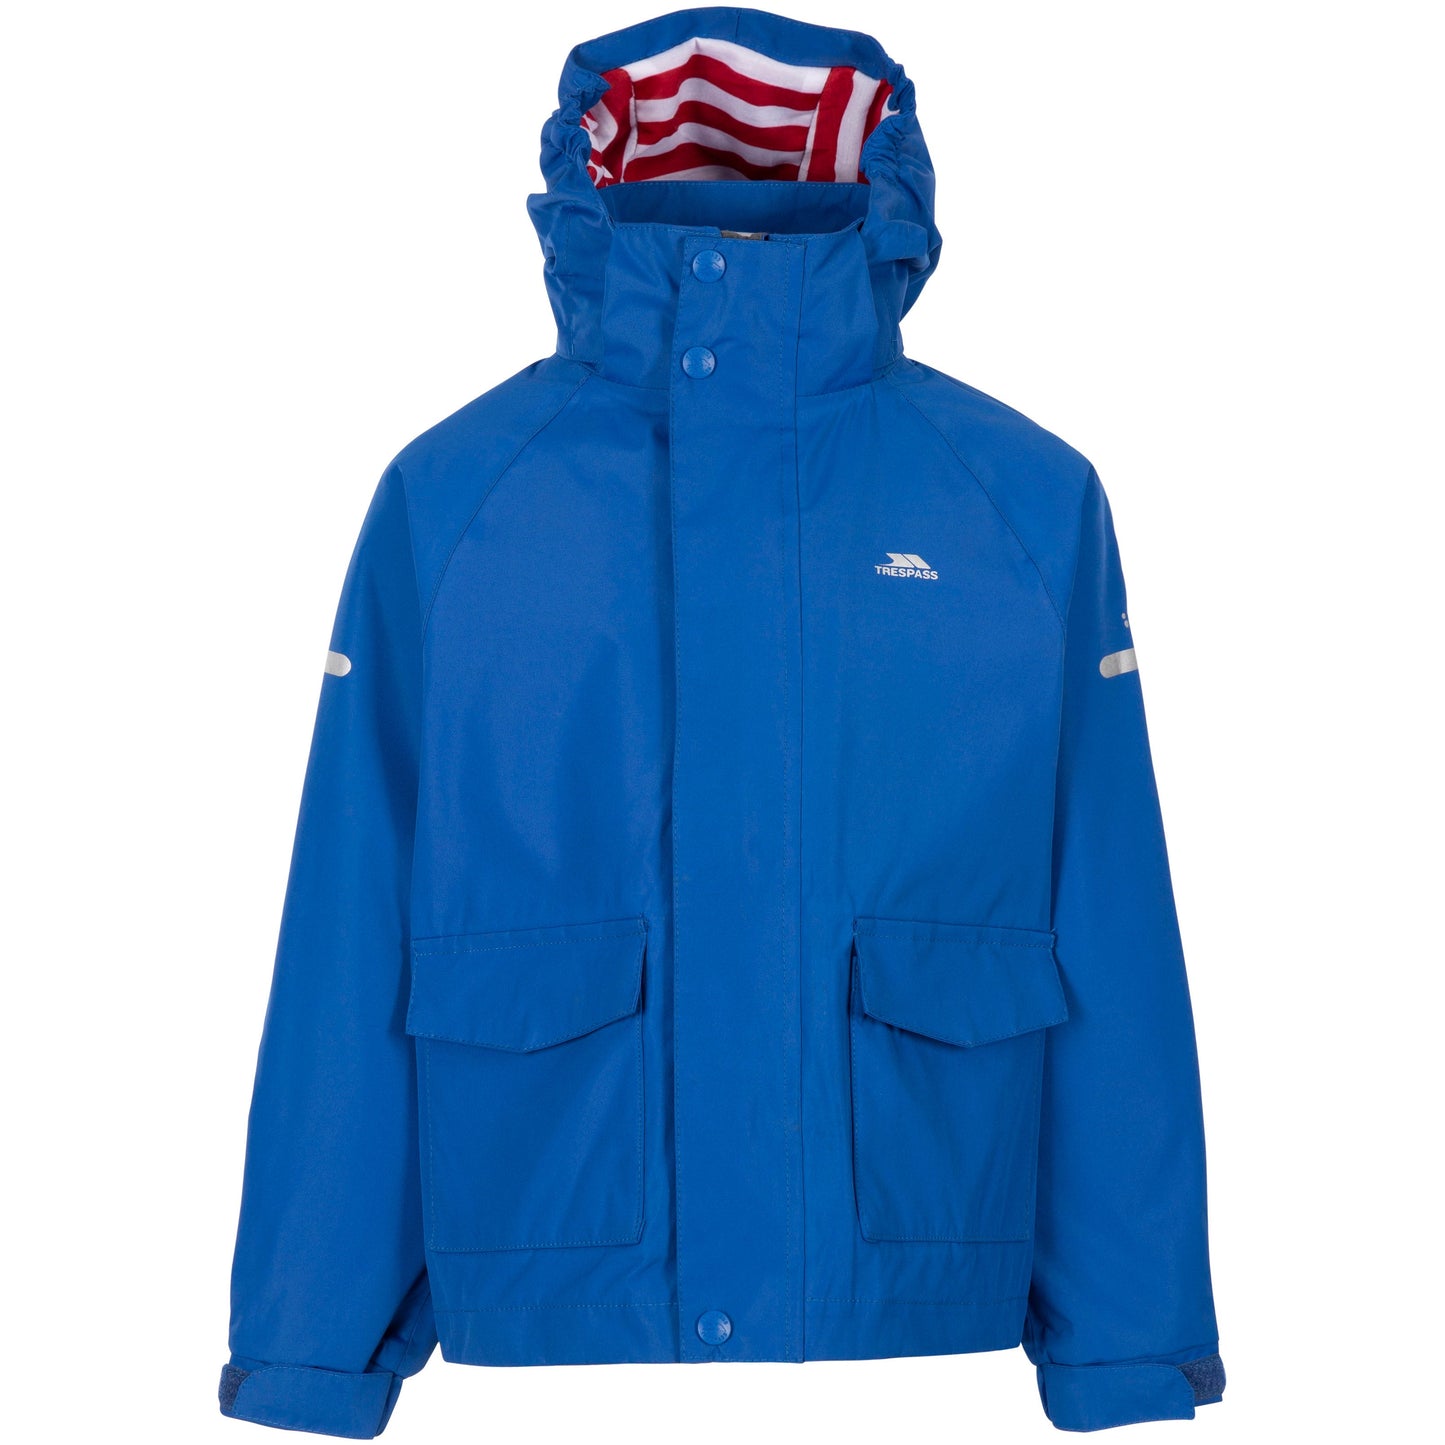 Bluster Unisex Kids Unpadded Waterproof Jacket in Blue